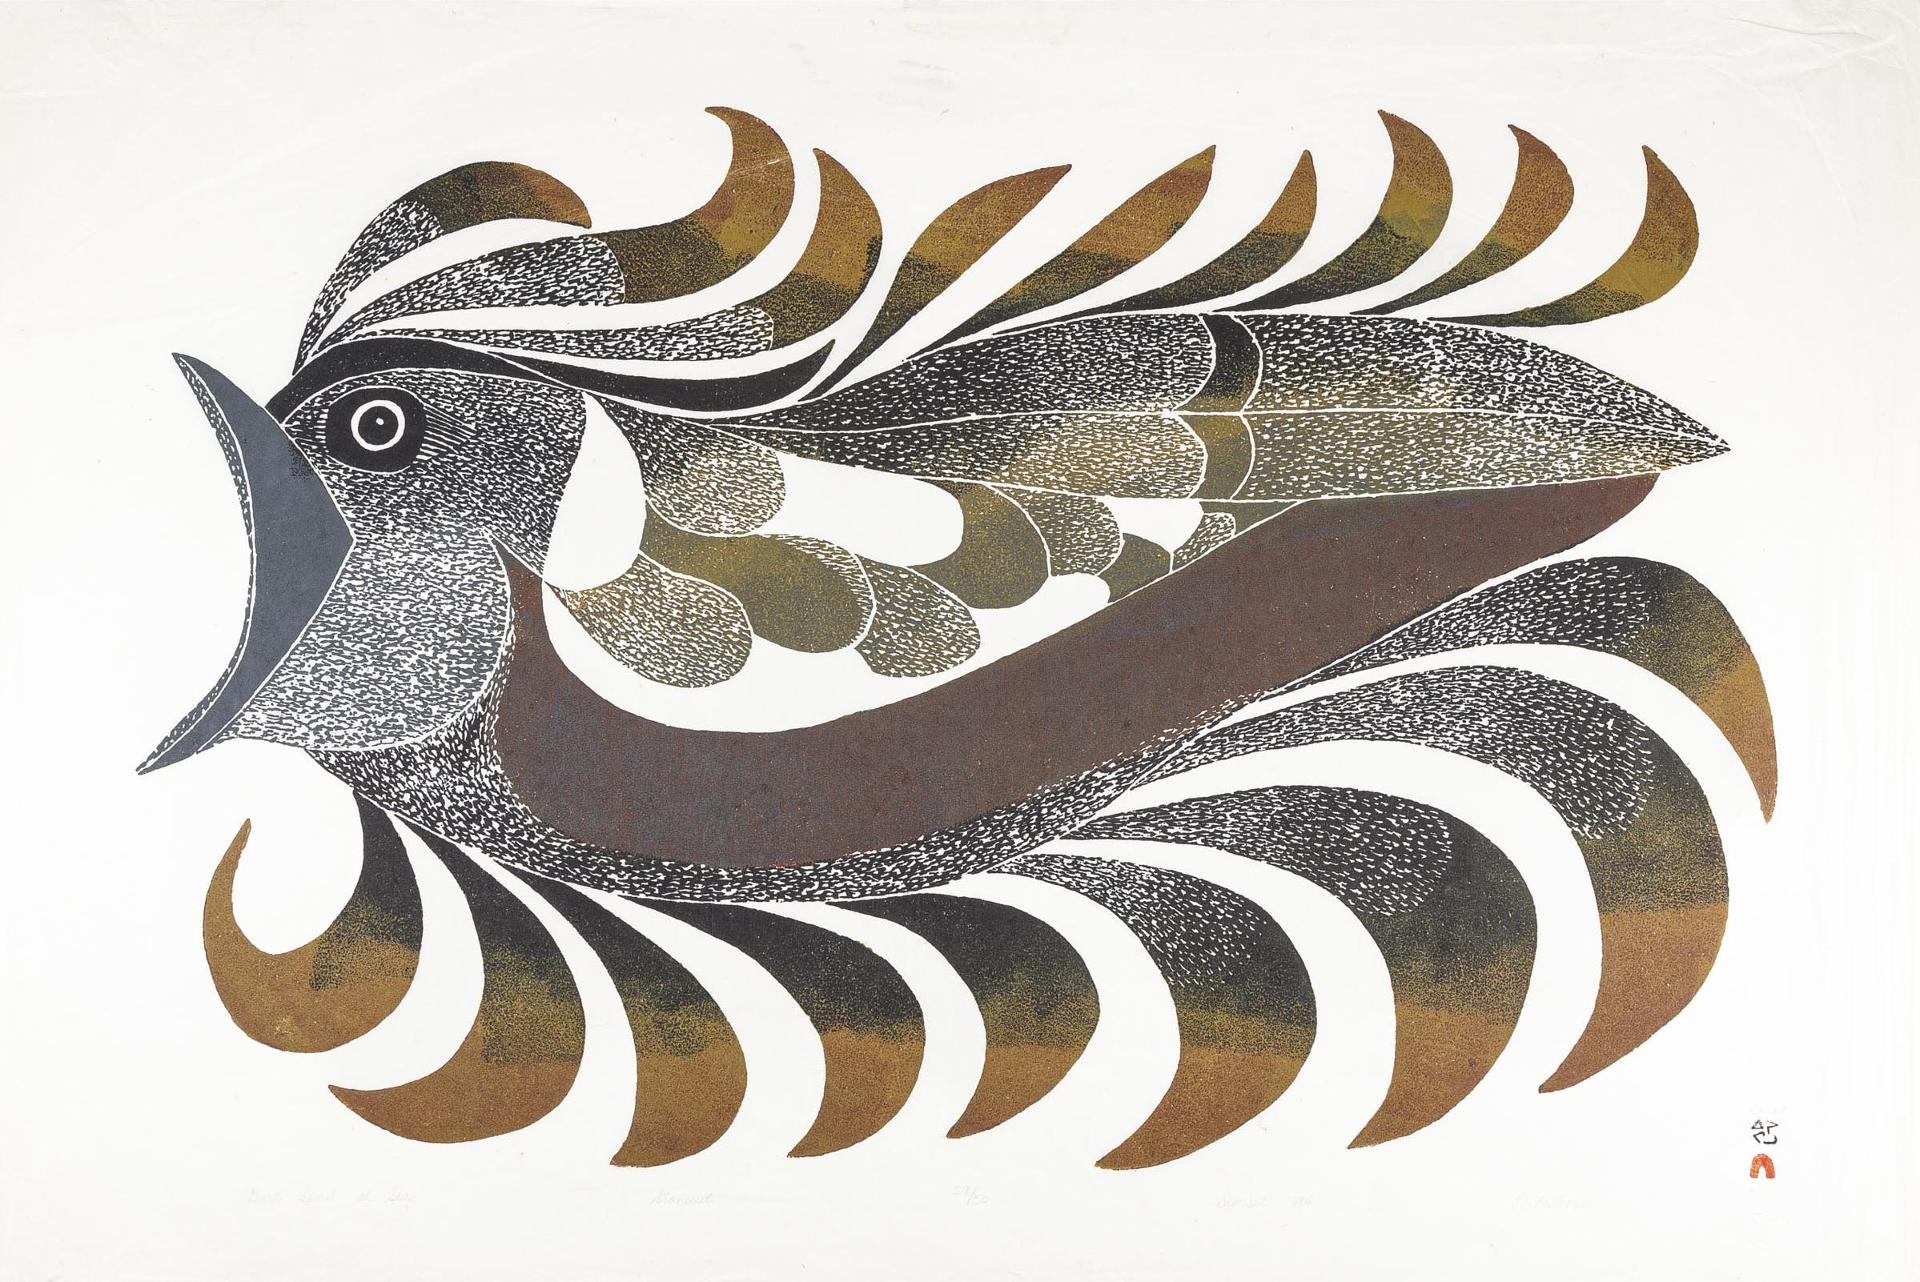 Pitaloosie Saila (1942-2021) - Bird Spirit At Sea, 1984